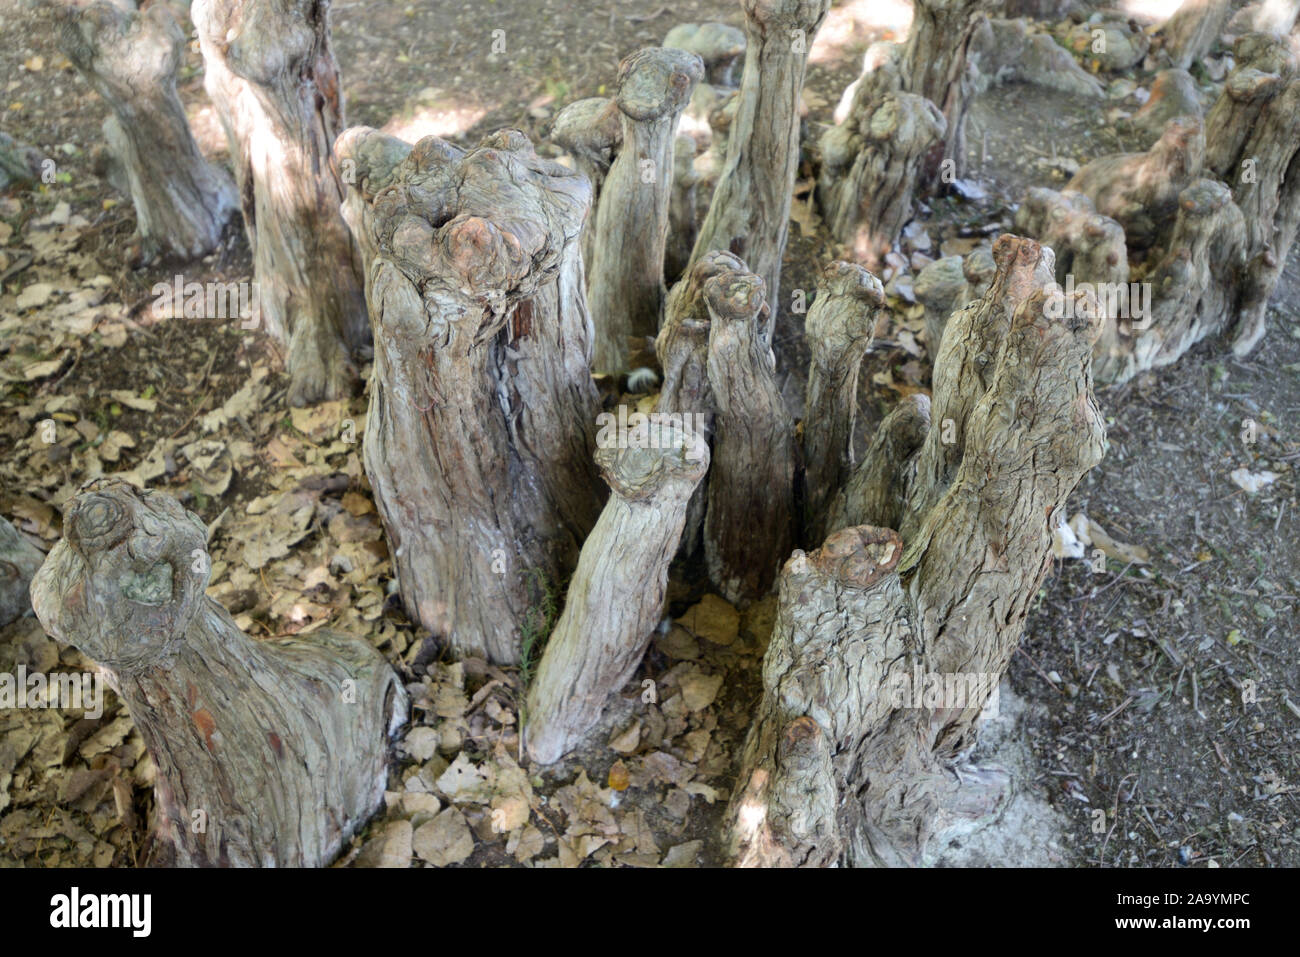 Cypress Knien oder Pneumatophores der Zypresse distichum Taxodium distichum in Borely botanischen Garten oder Park Marseille Frankreich Stockfoto